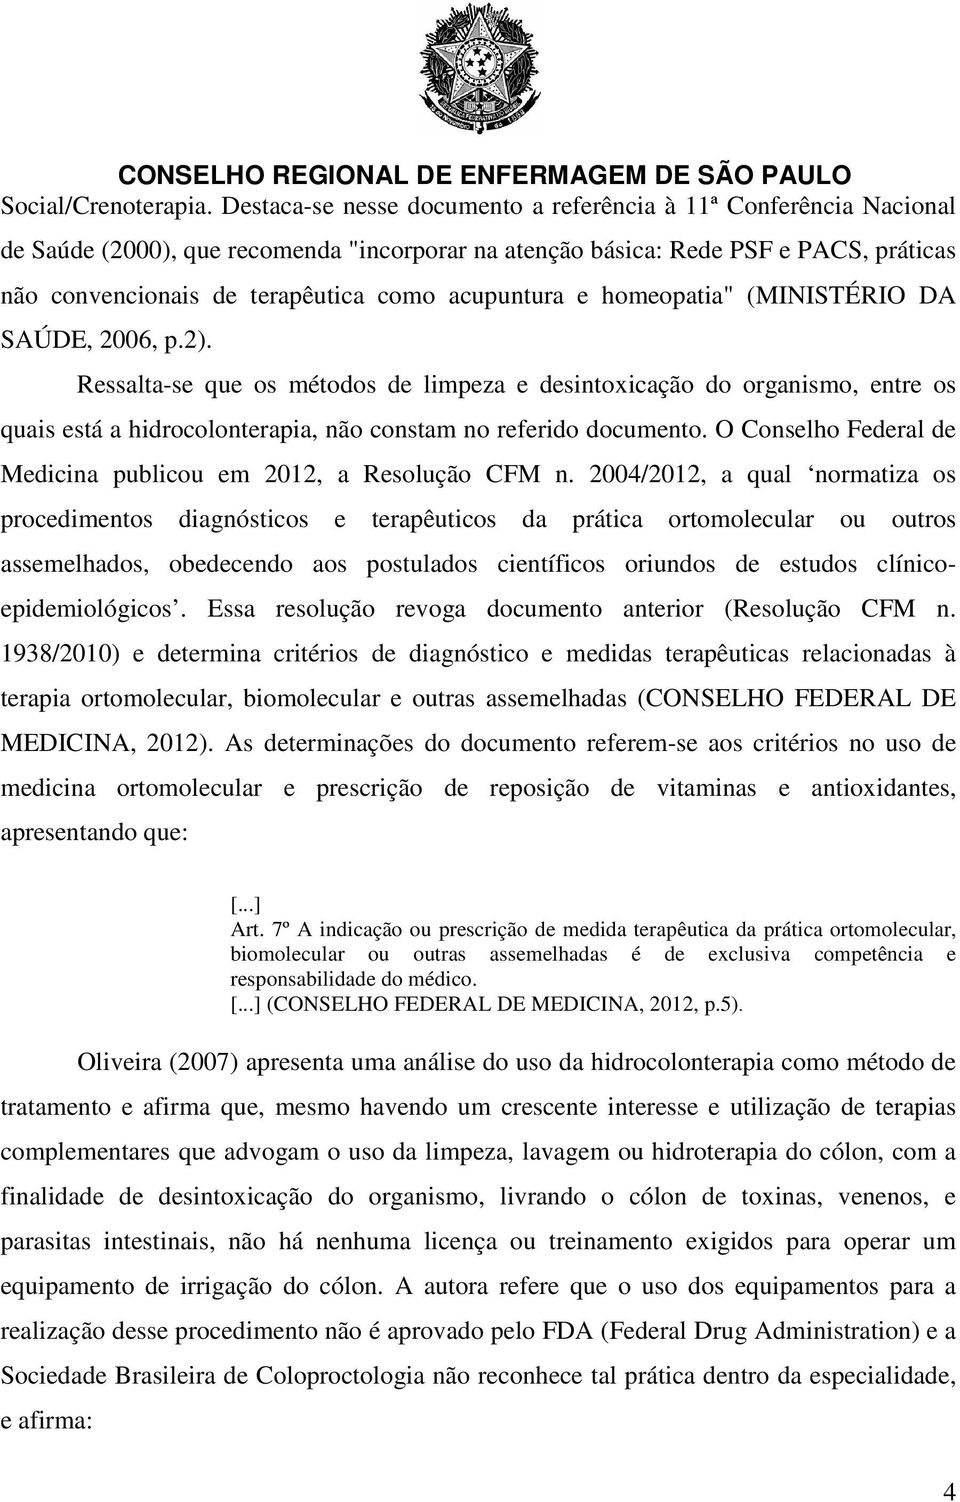 acupuntura e homeopatia" (MINISTÉRIO DA SAÚDE, 2006, p.2).